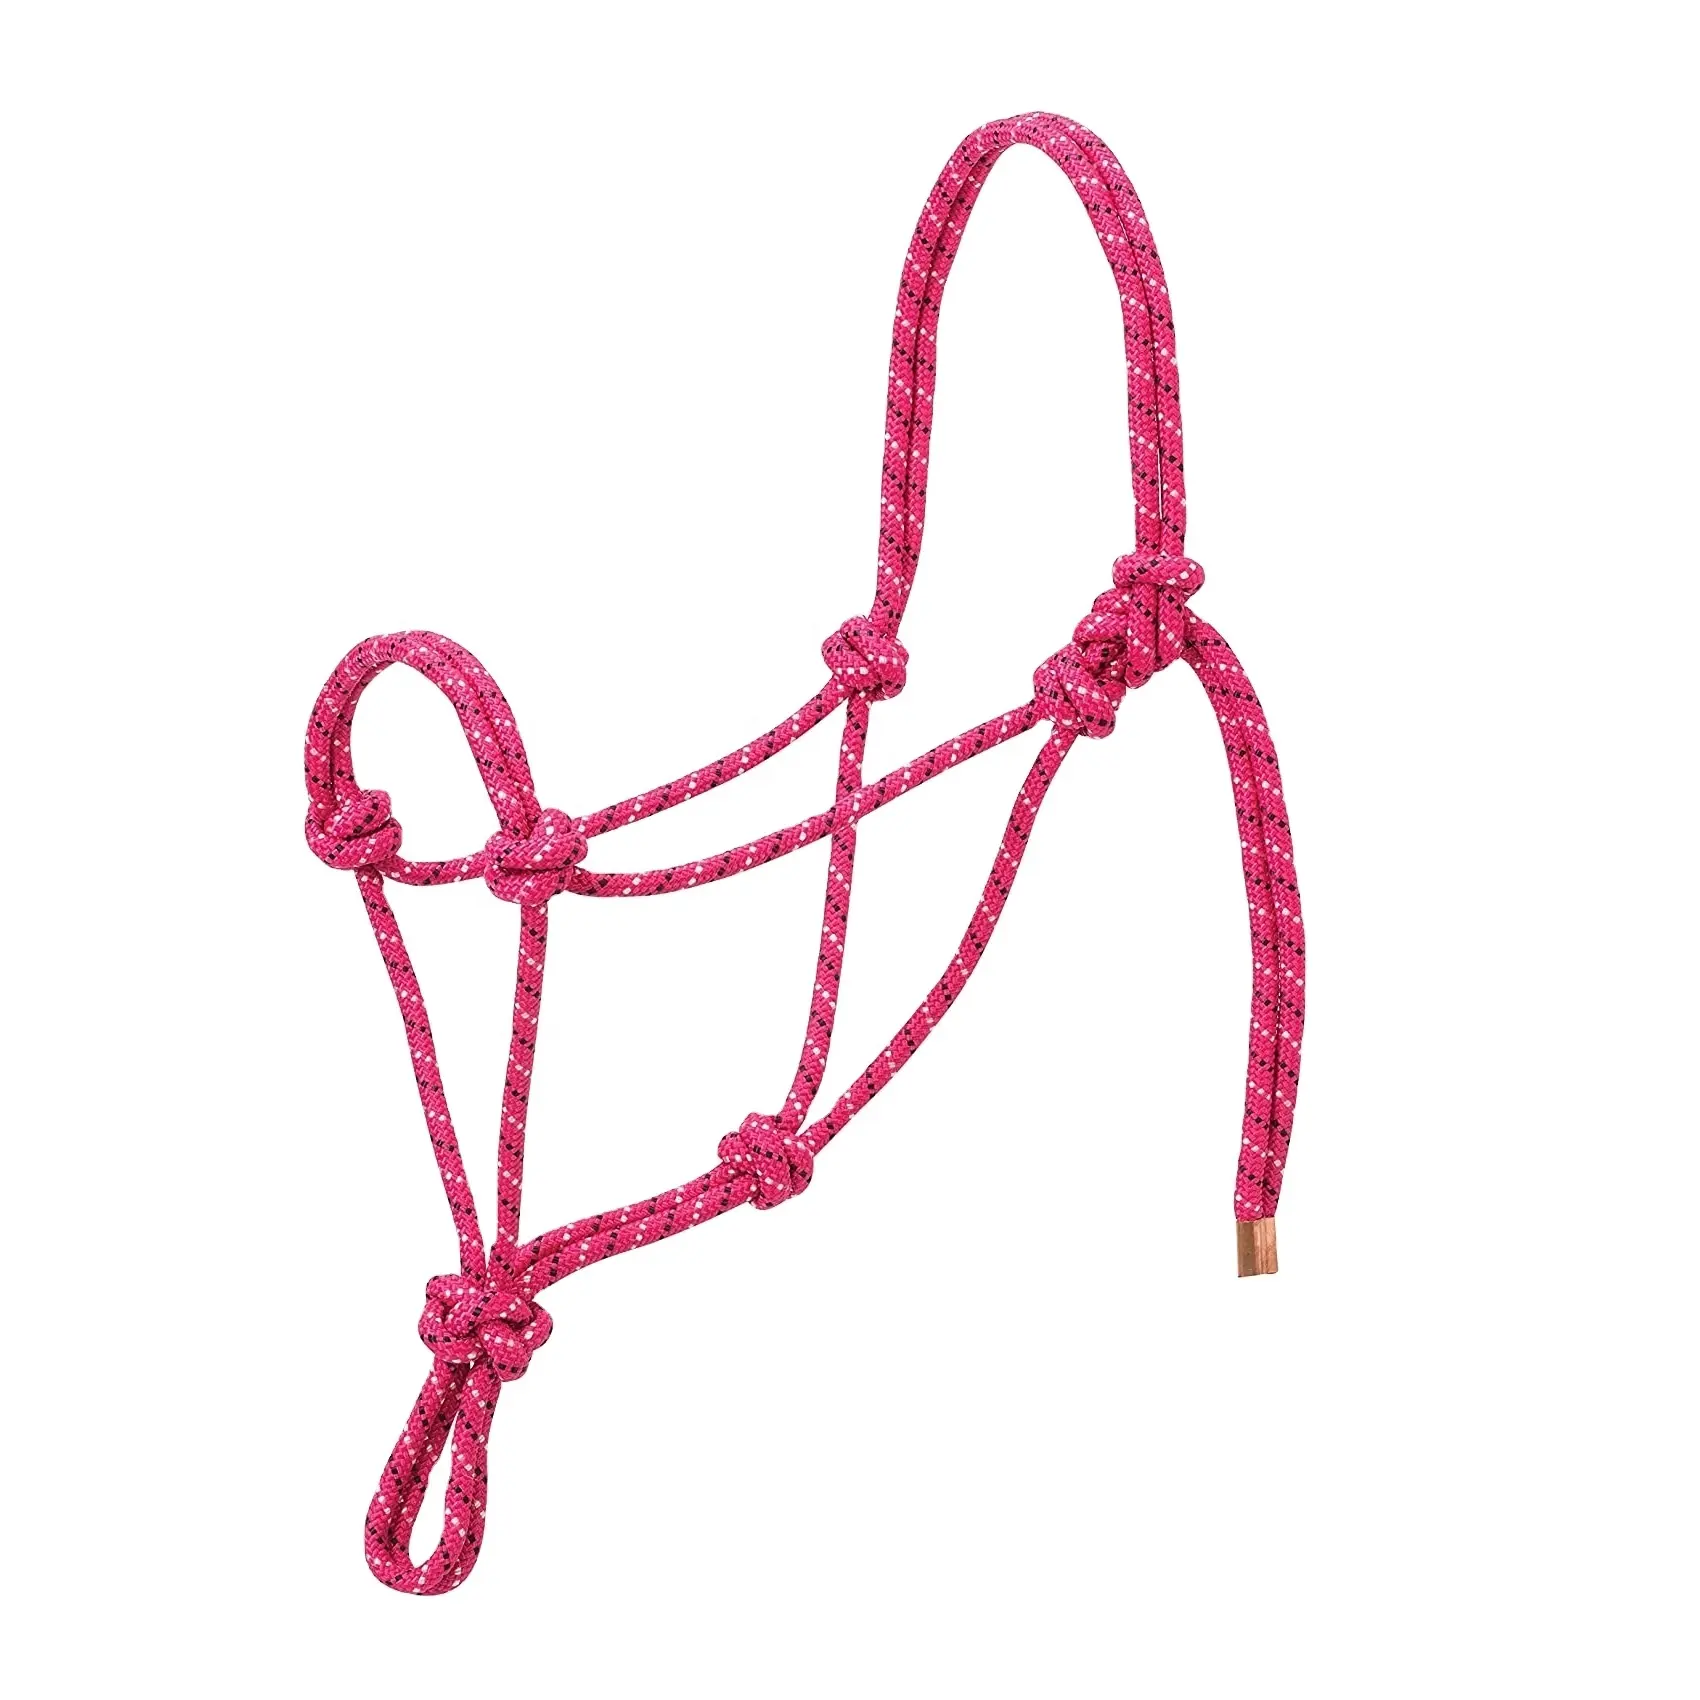 Custom Made Raspberry Kim Cương Braid Horse Rope Halter Hồng Bán Buôn Nhà Sản Xuất OEM/ODM Chấp Nhận Tất Cả Các Màu Sắc Có Sẵn